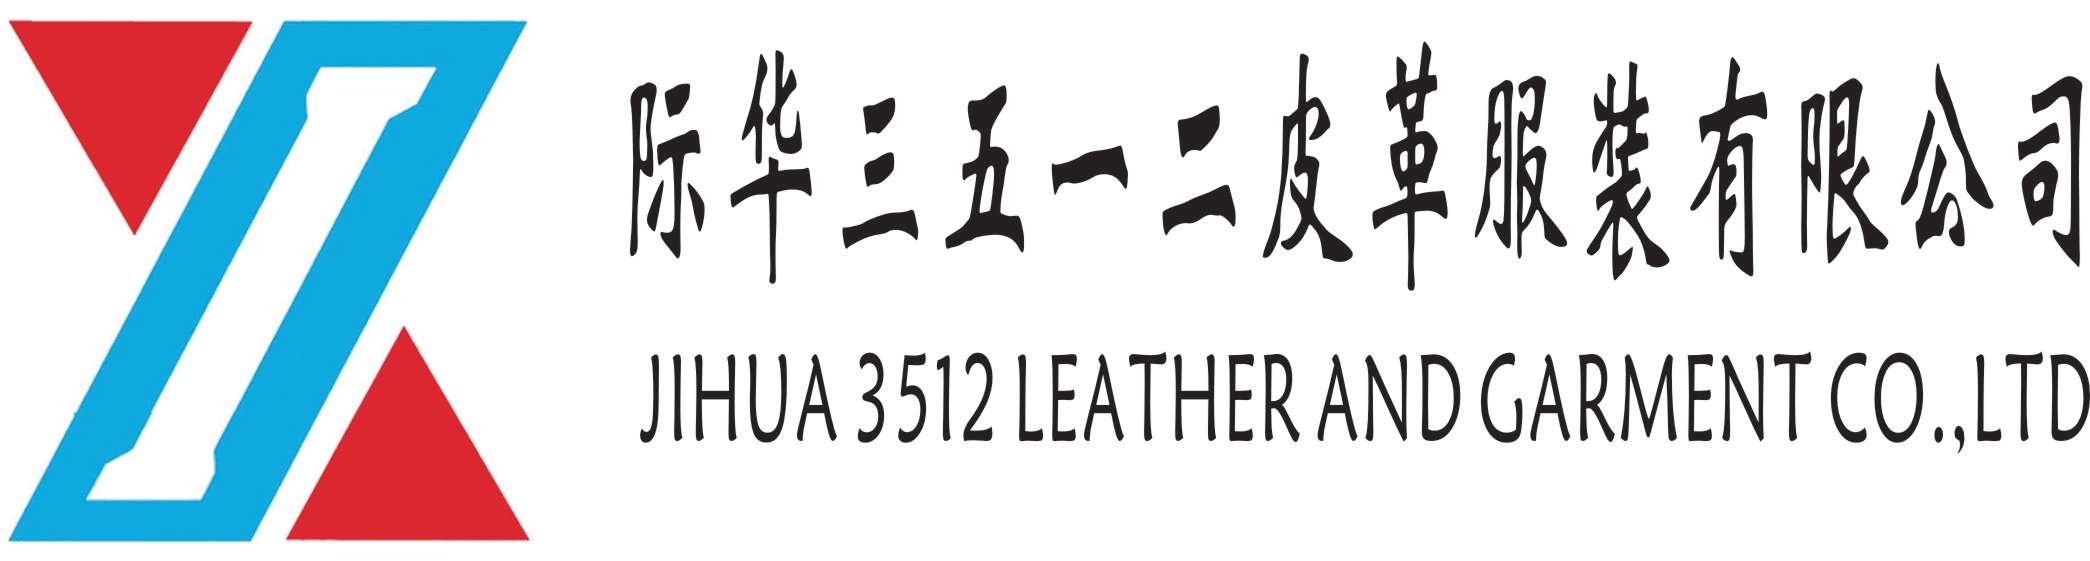 際華三五一二皮革服裝有限公司-新興際華集團成員企業